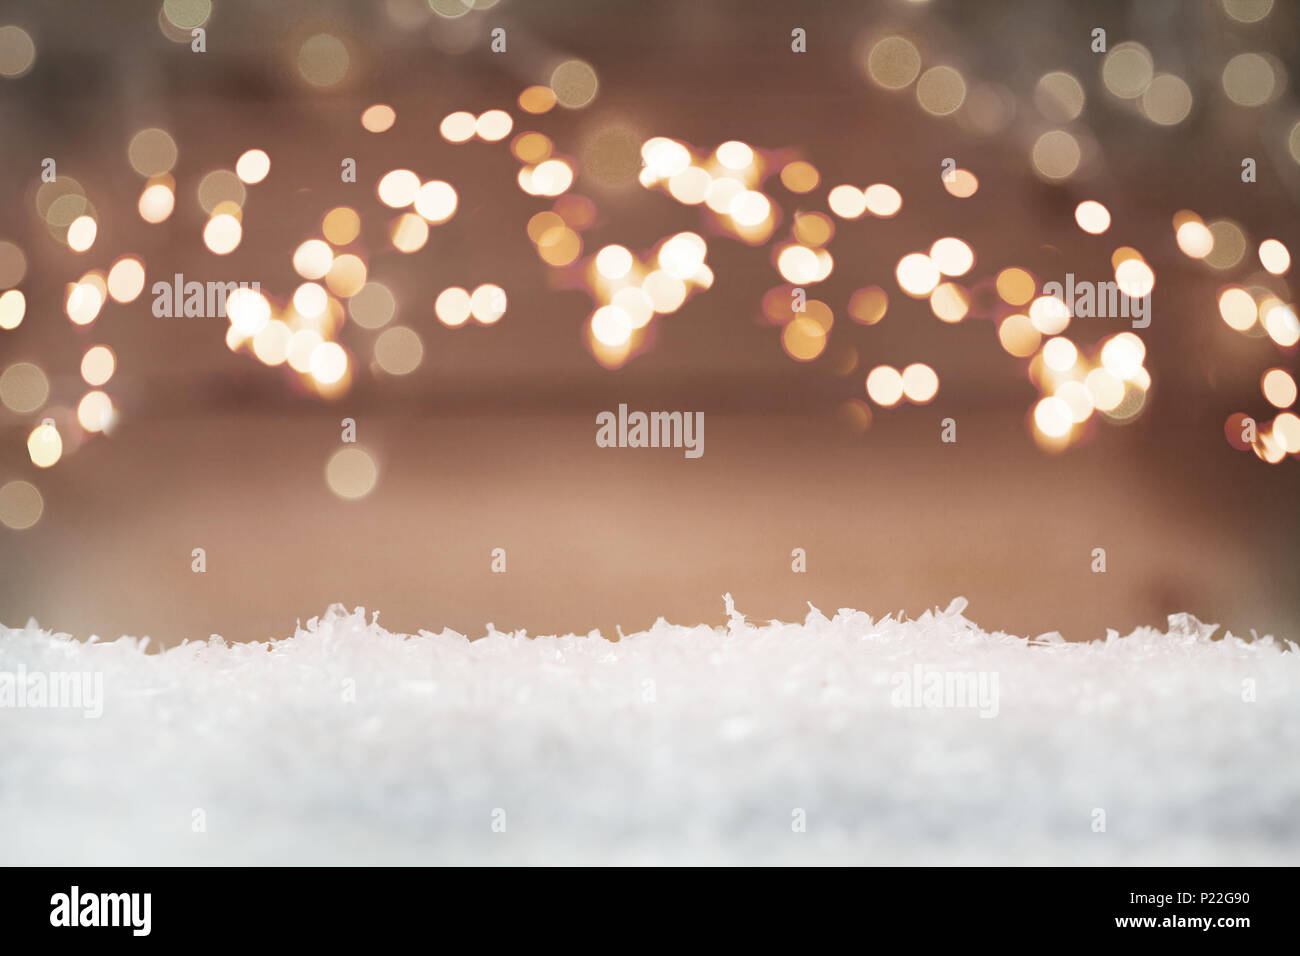 Antecedentes muy navideño con nieve y puntos de luz Foto de stock